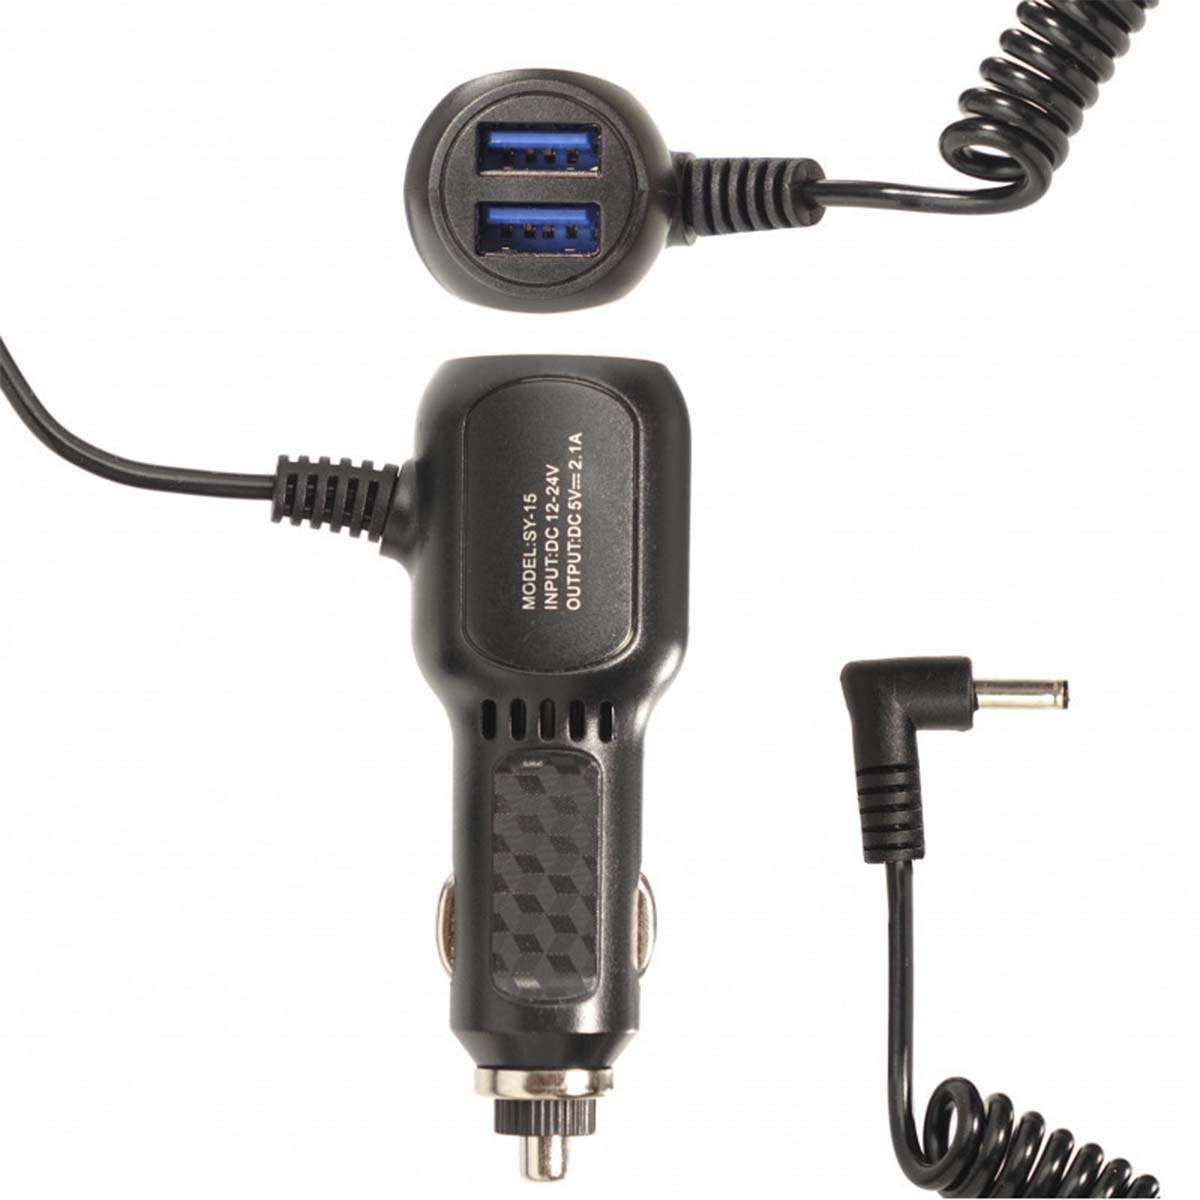 АЗУ (Автомобильное зарядное устройство) SY-15, 2 USB - 5V/2.1A, с витым кабелем, штекер 3.5x1.35, цвет черный